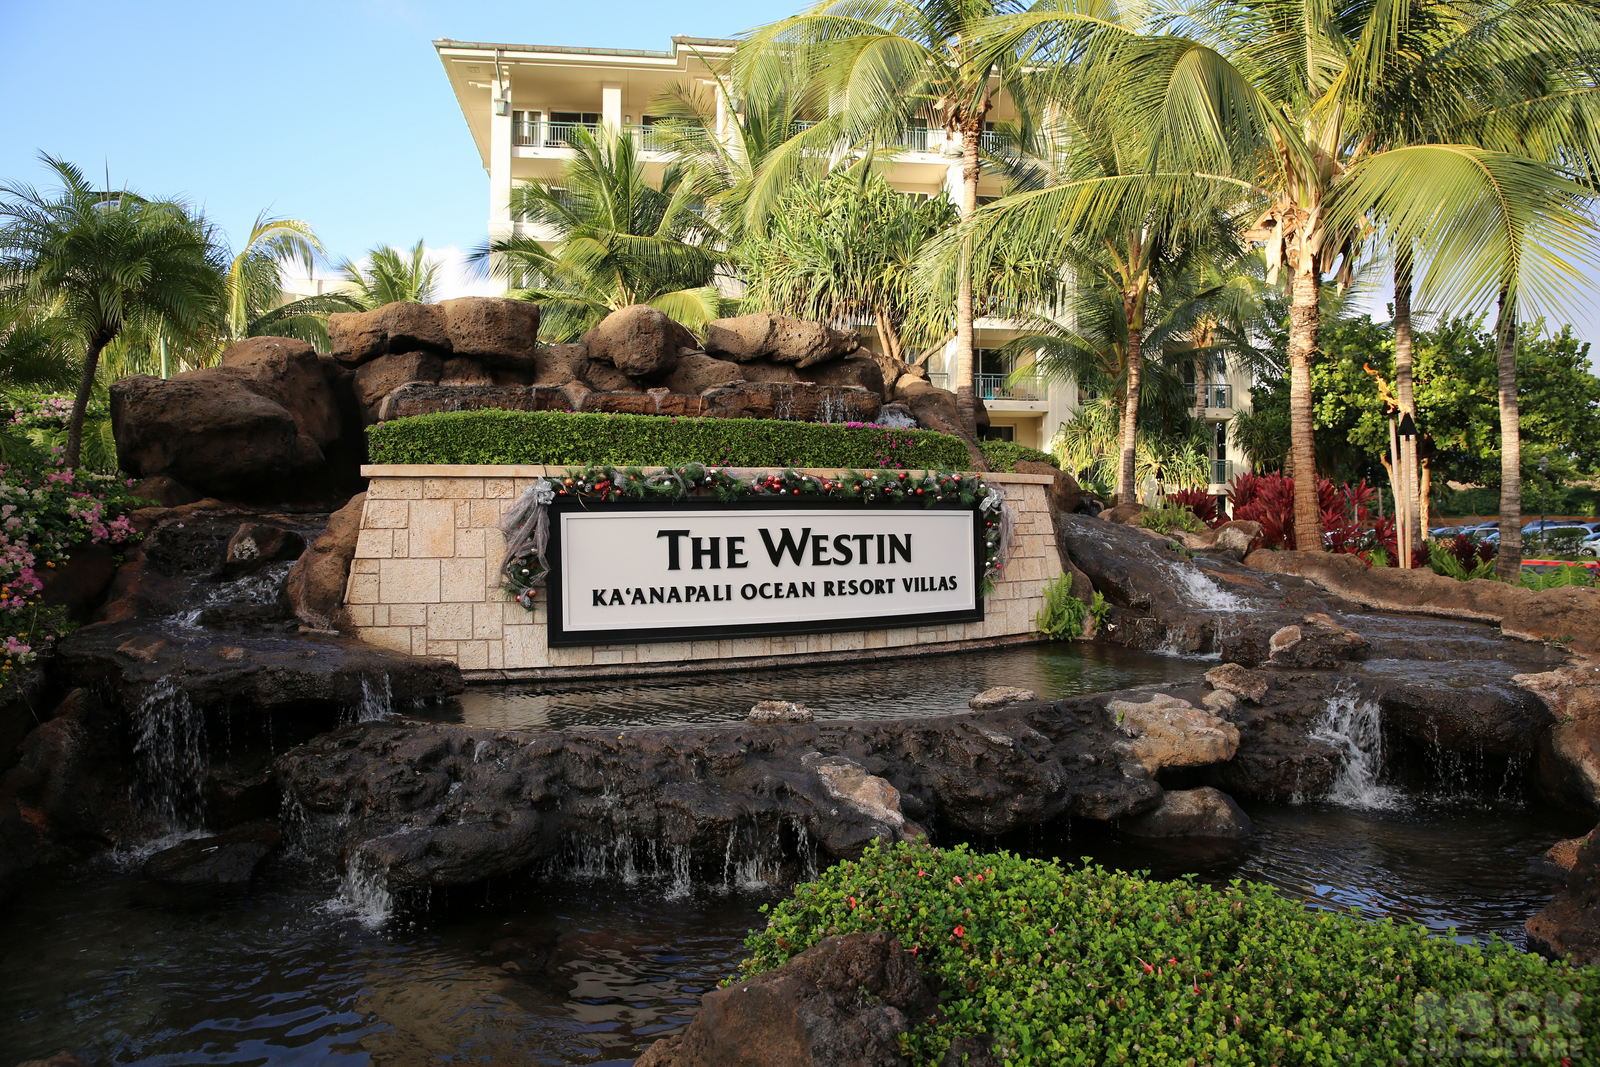 Hotel/Resort Review The Westin Ka’anapali Ocean Resort